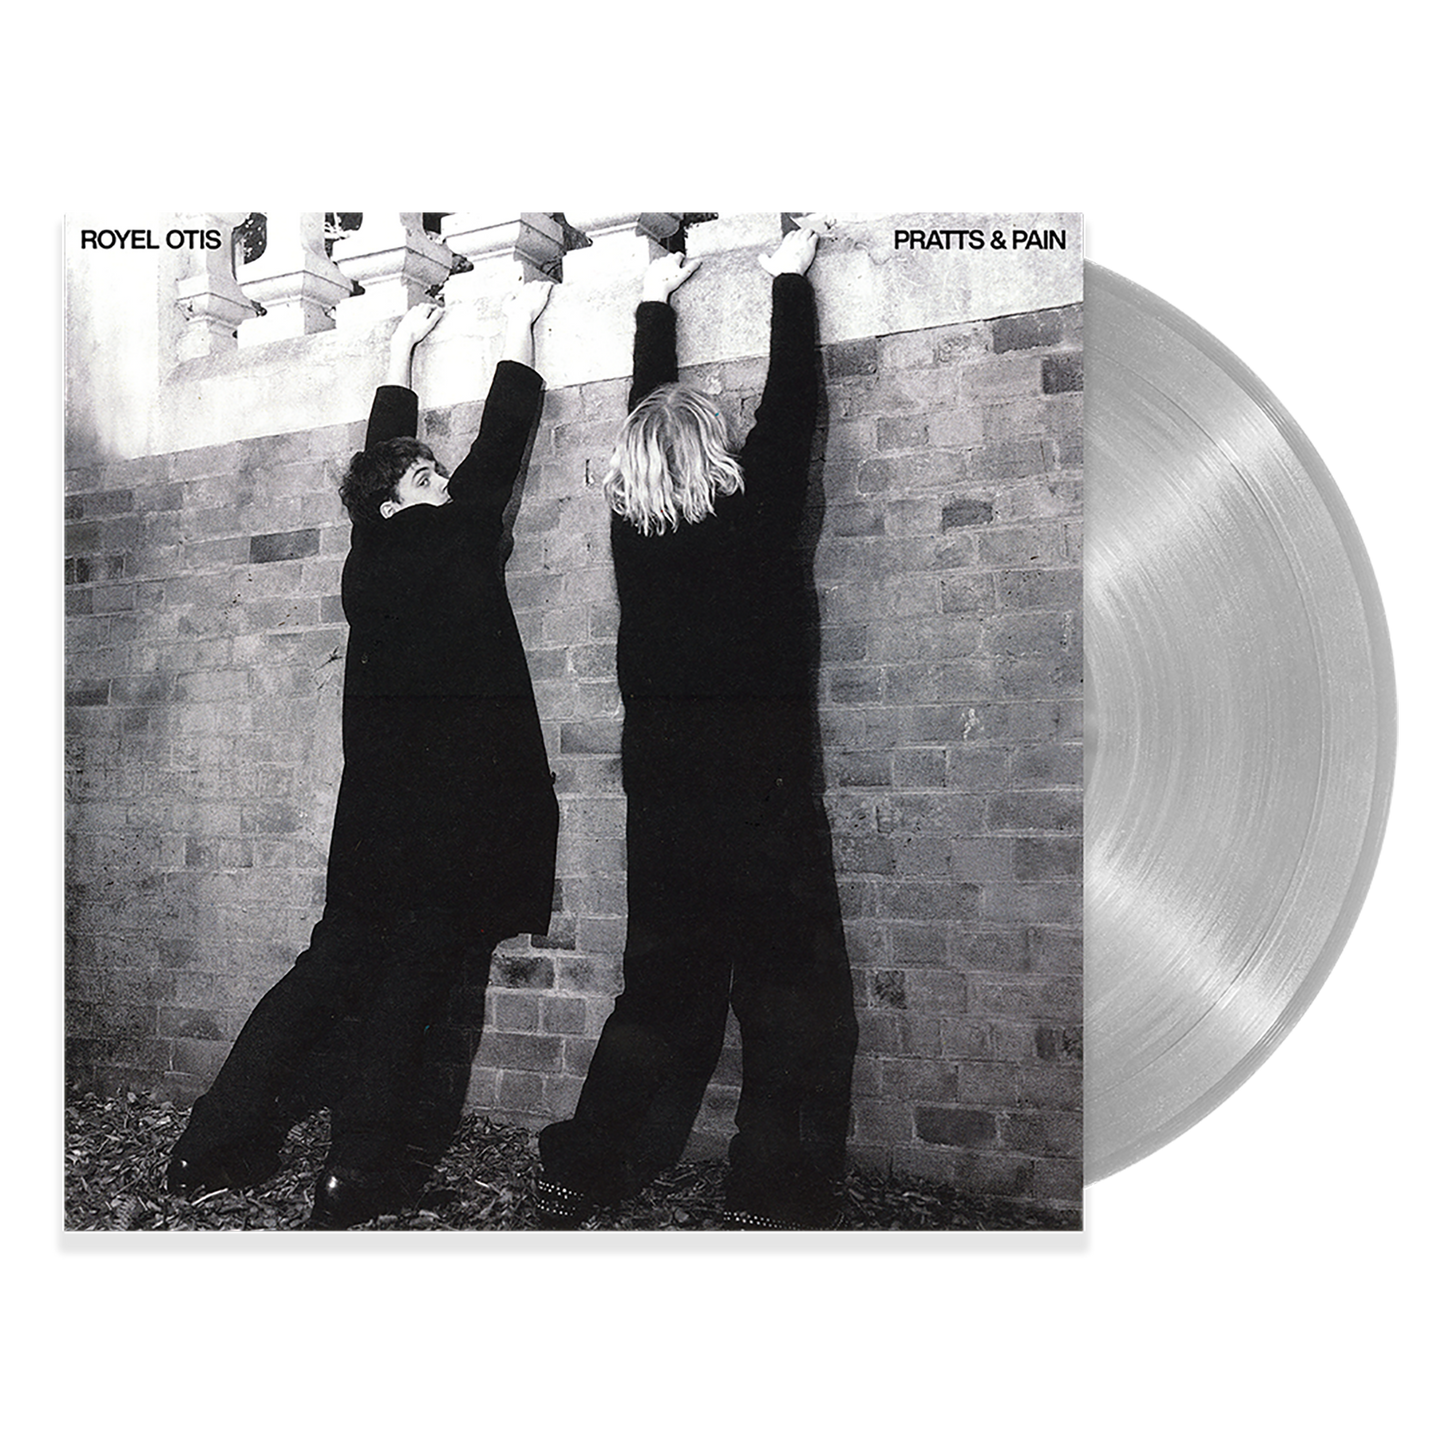 PRATTS & PAIN Exclusive Translucent Vinyl 1LP